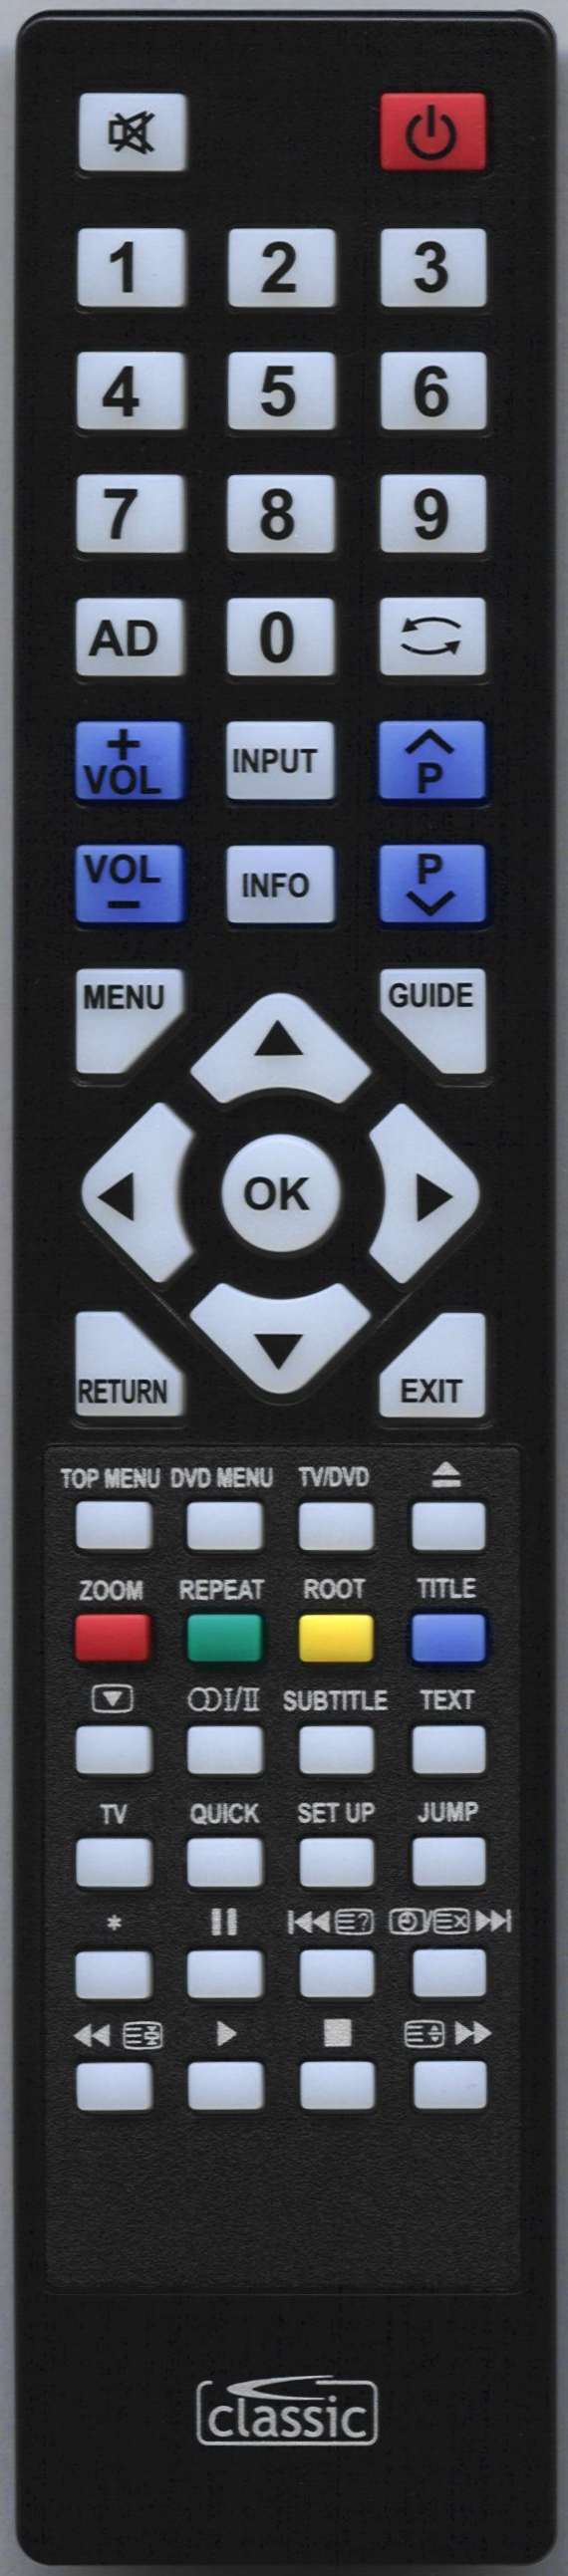 TOSHIBA 19DL833B Remote Control